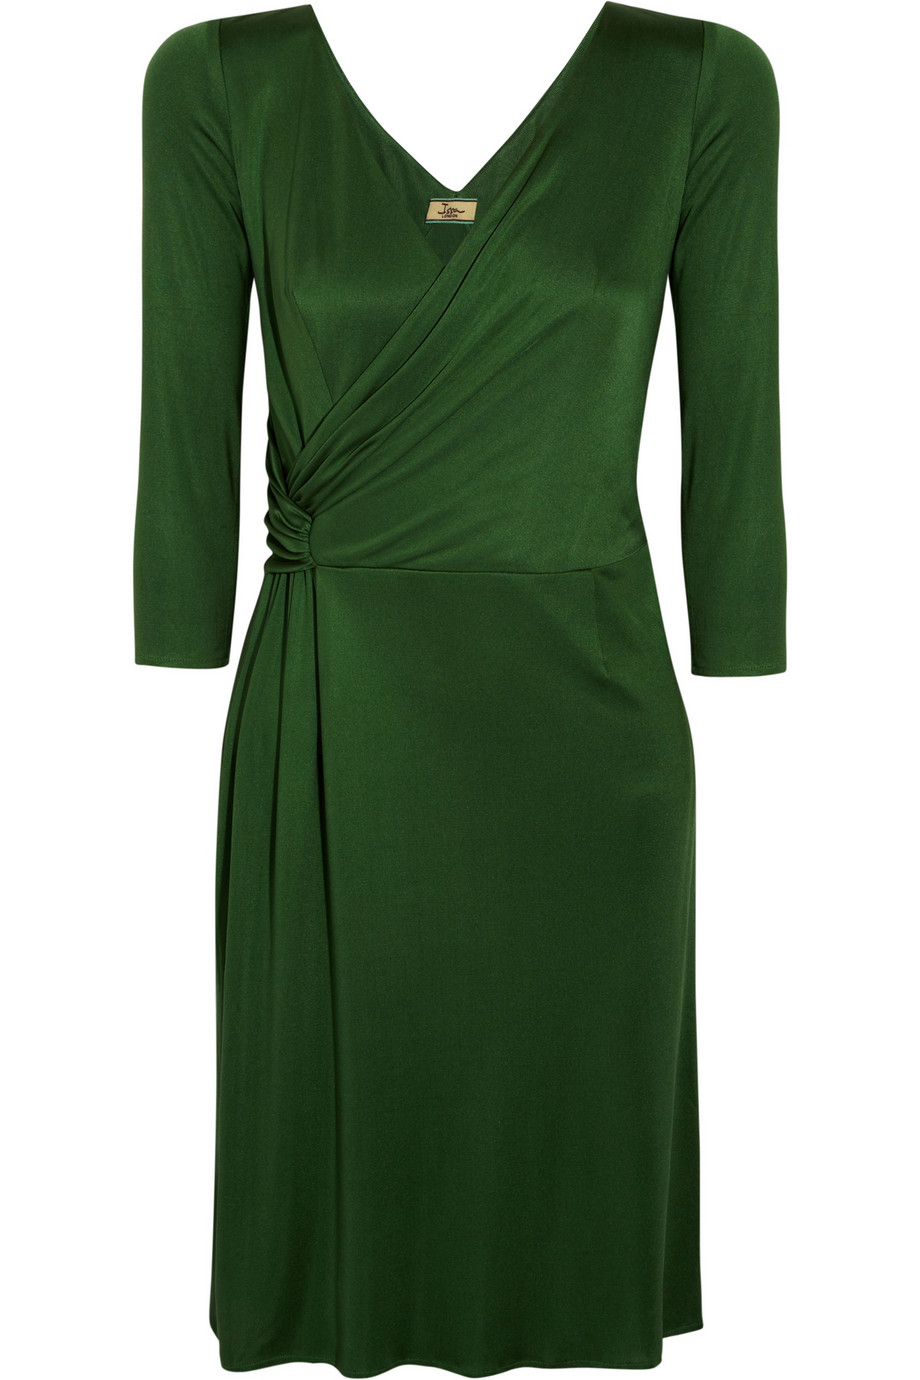 Issa Silk-Jersey Wrap Dress in Green | Lyst